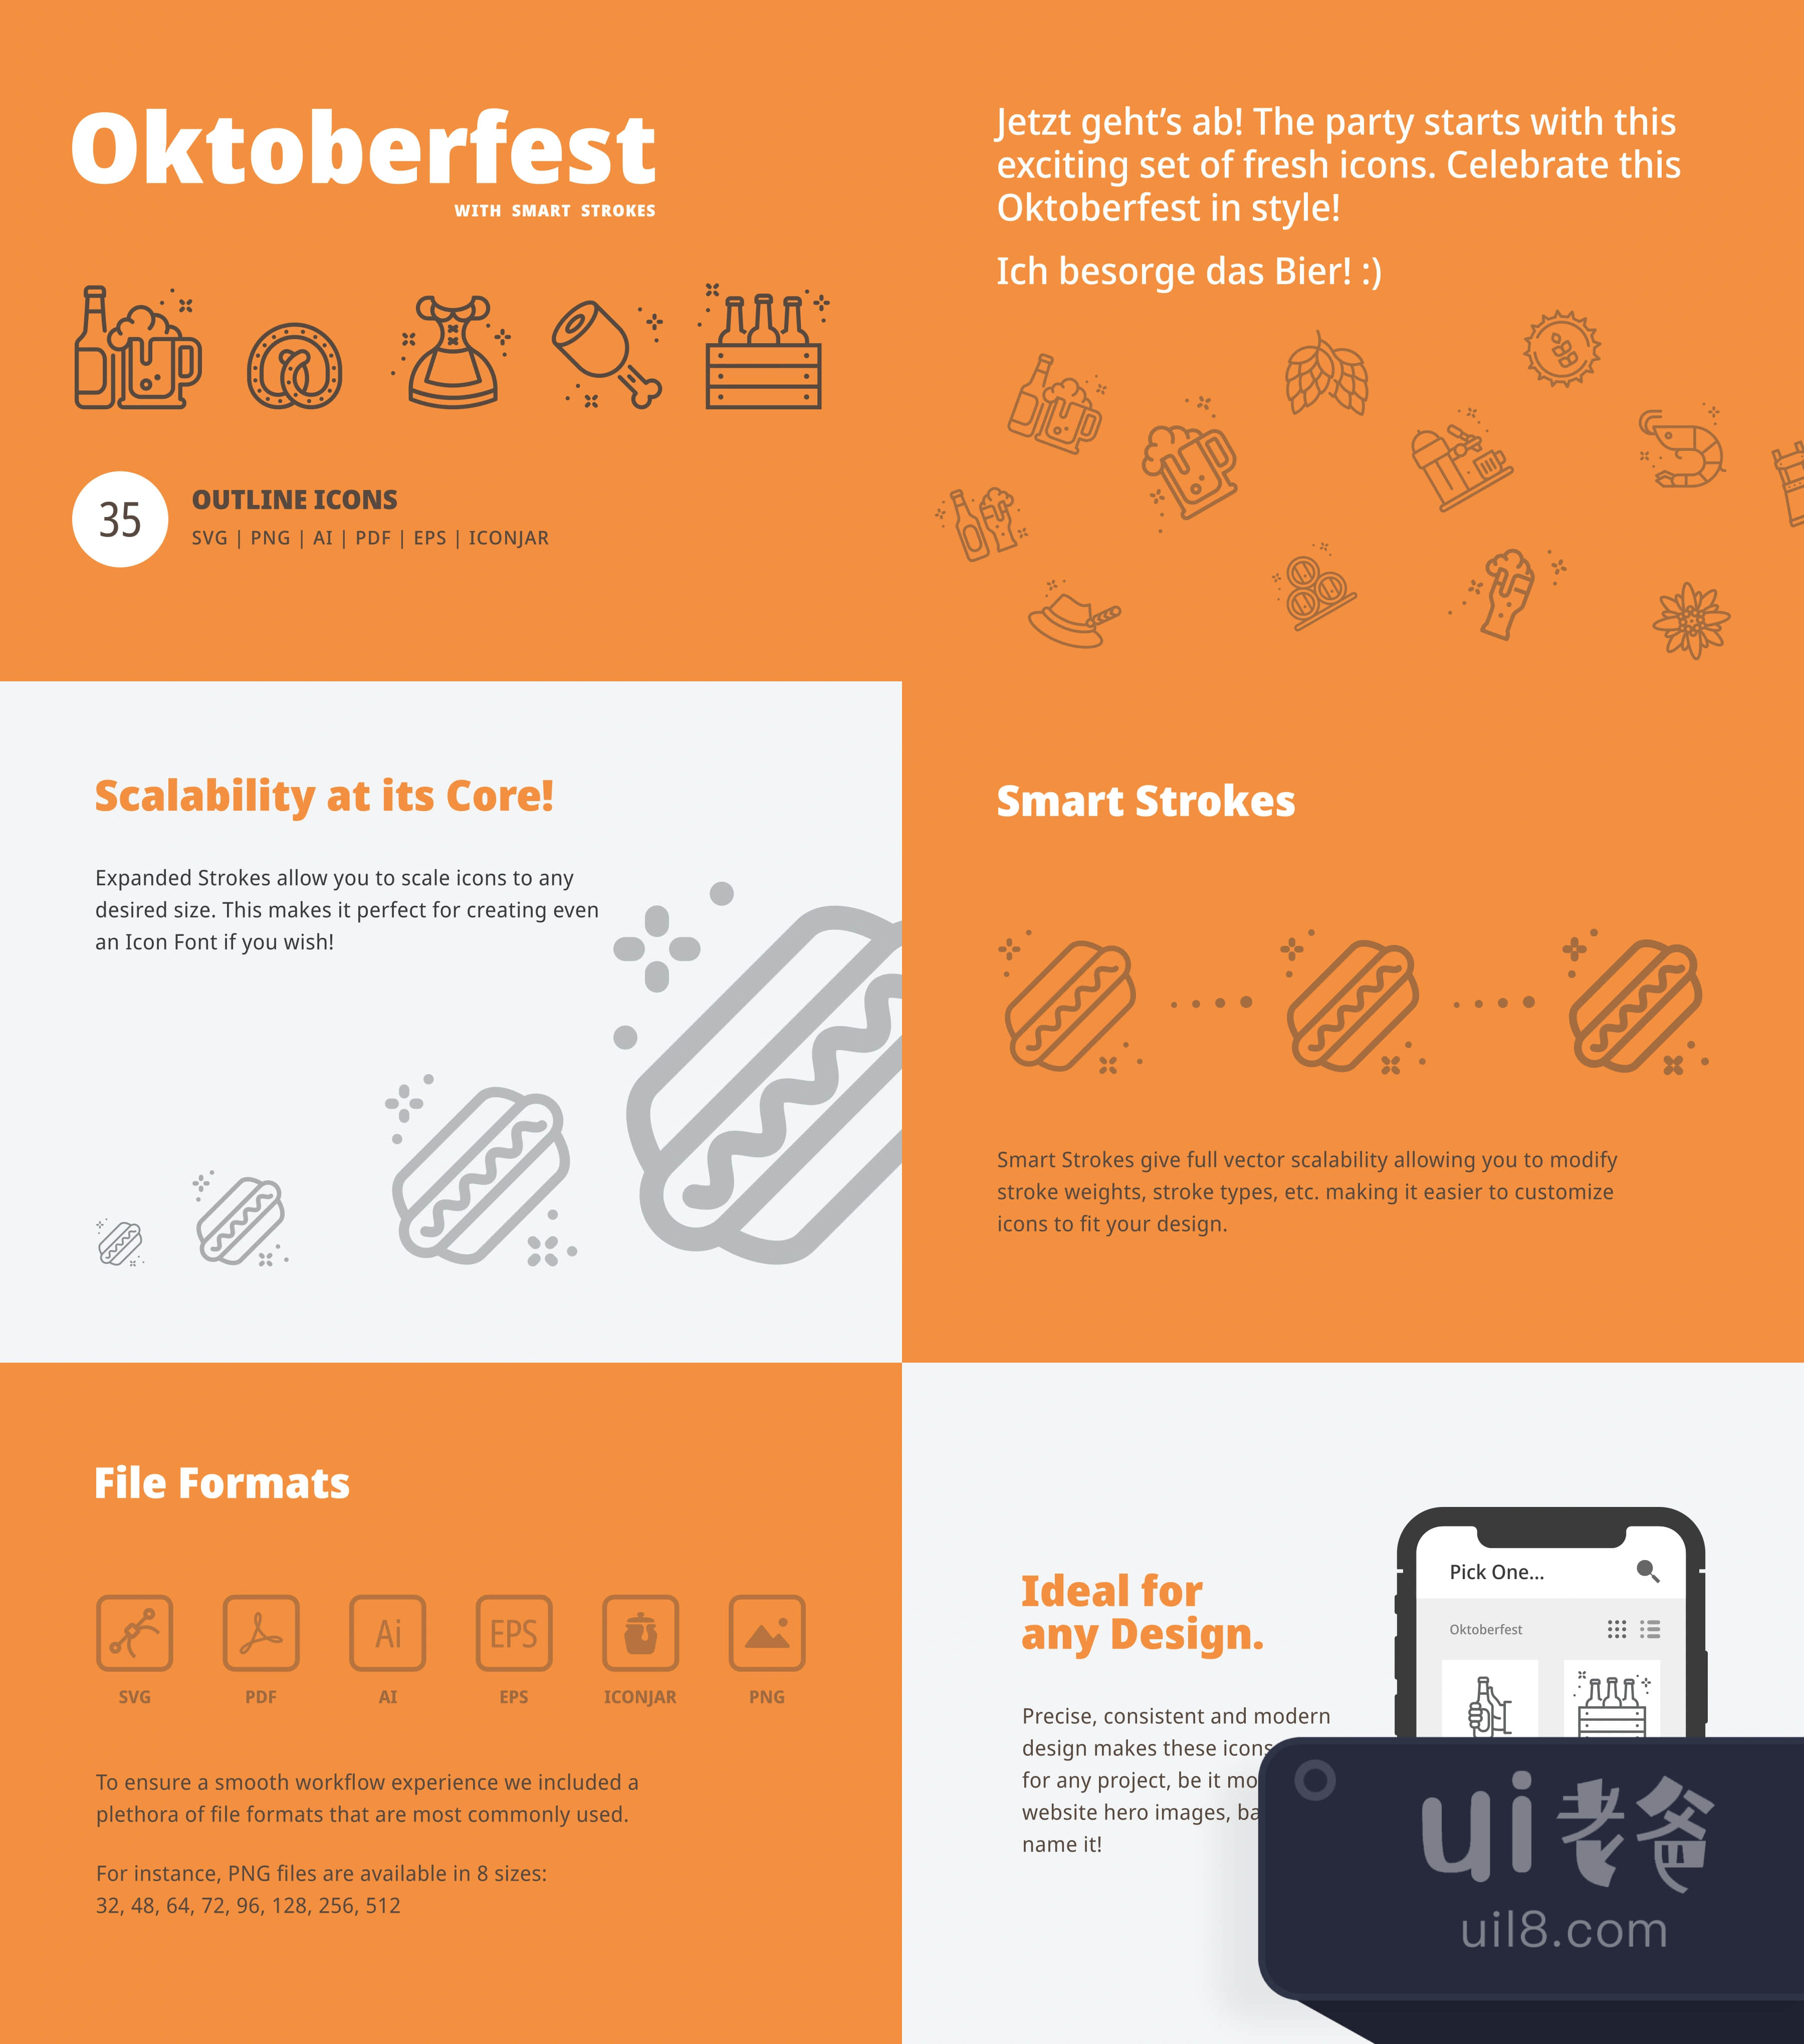 啤酒节图标 (Oktoberfest Icons)插图1